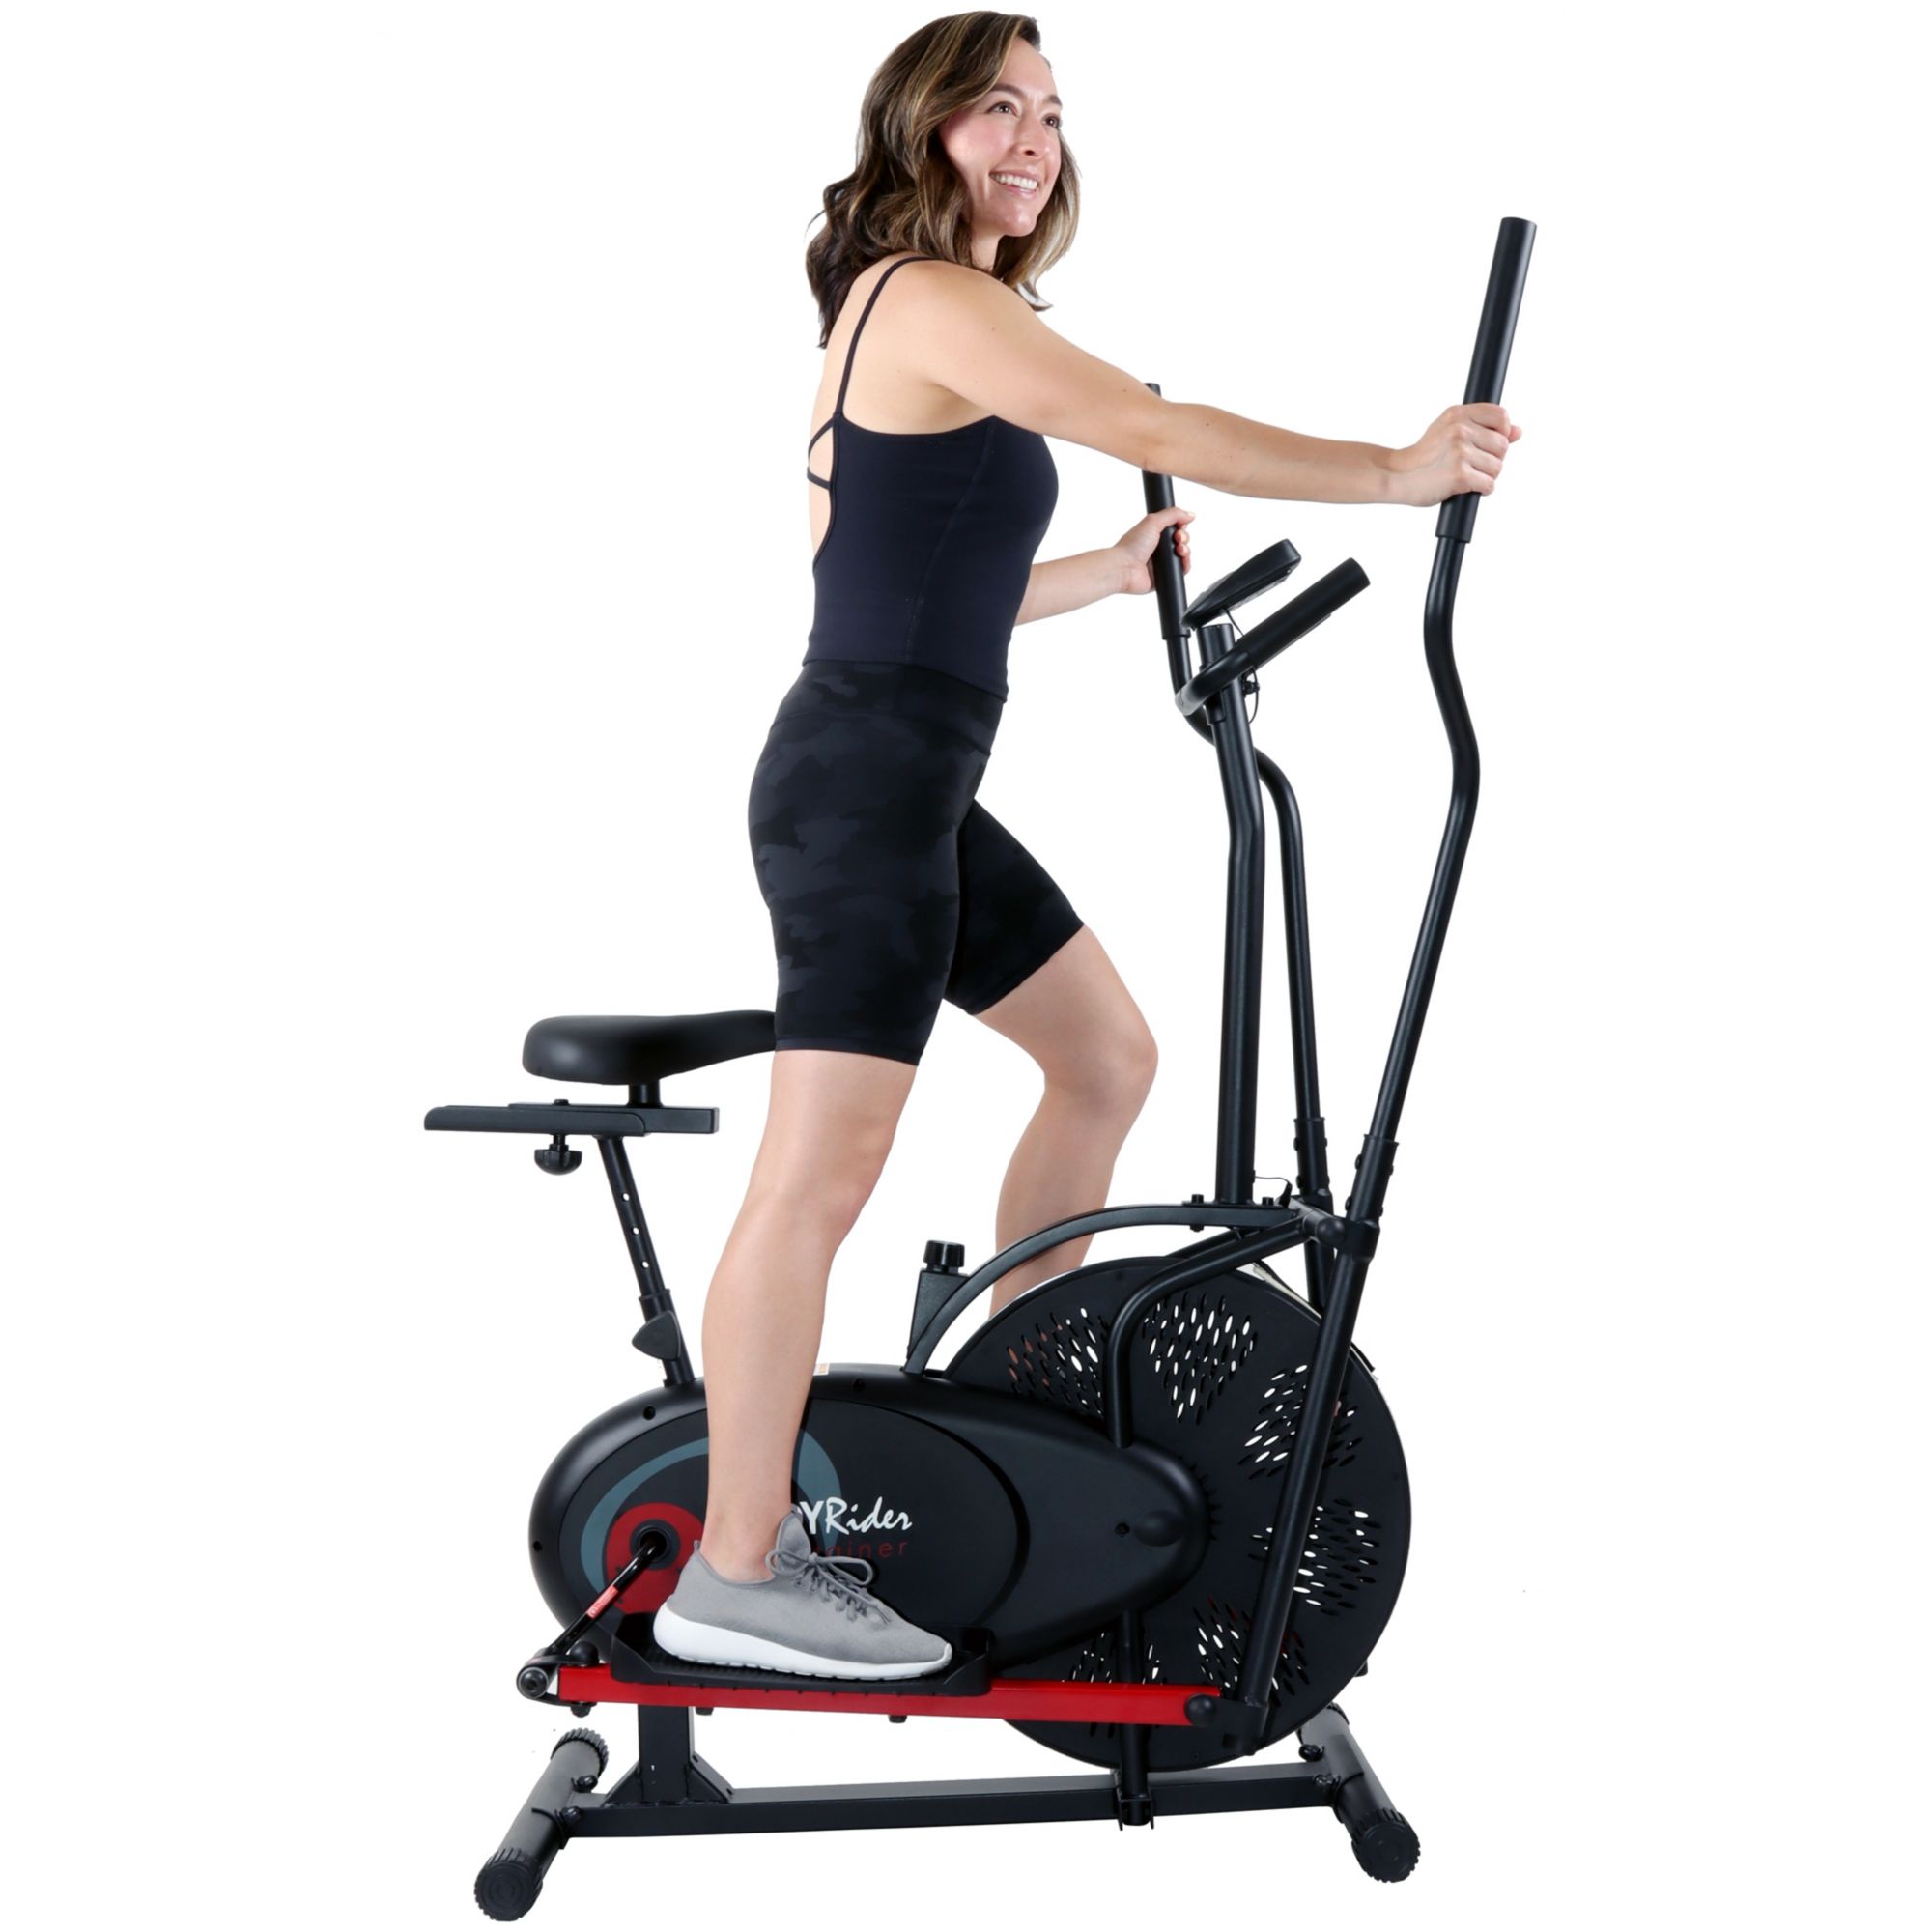 body rider elliptical